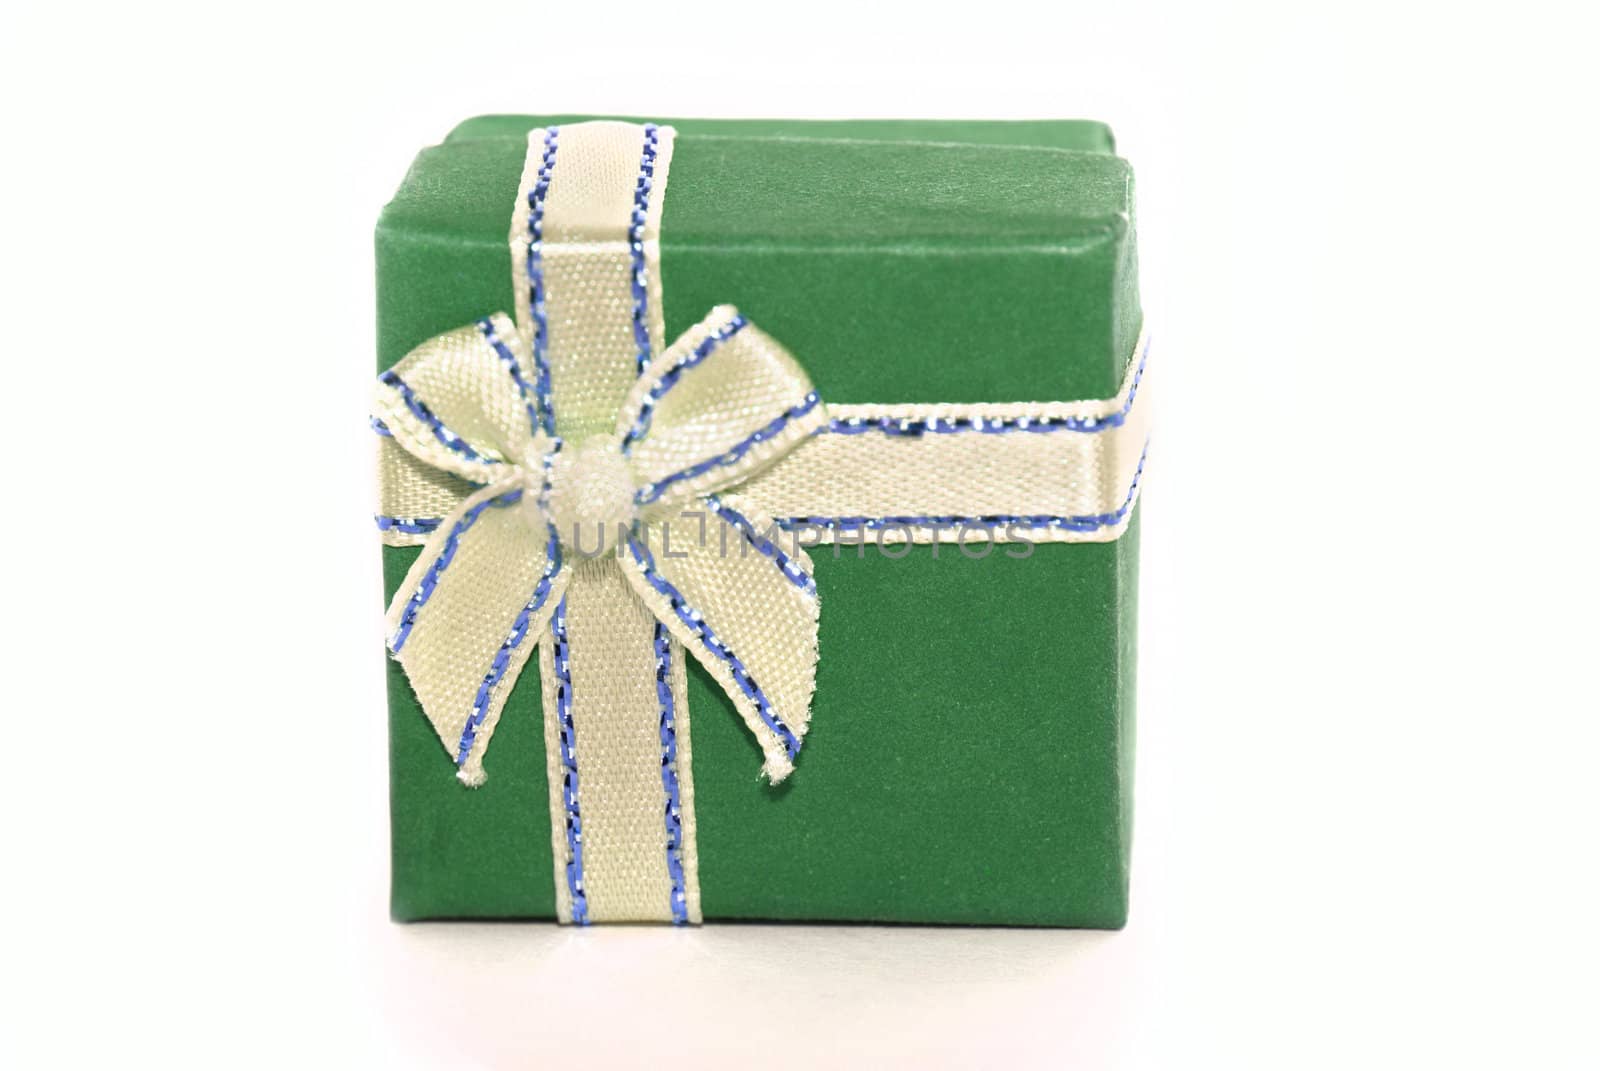 Green gift box by Olinkau